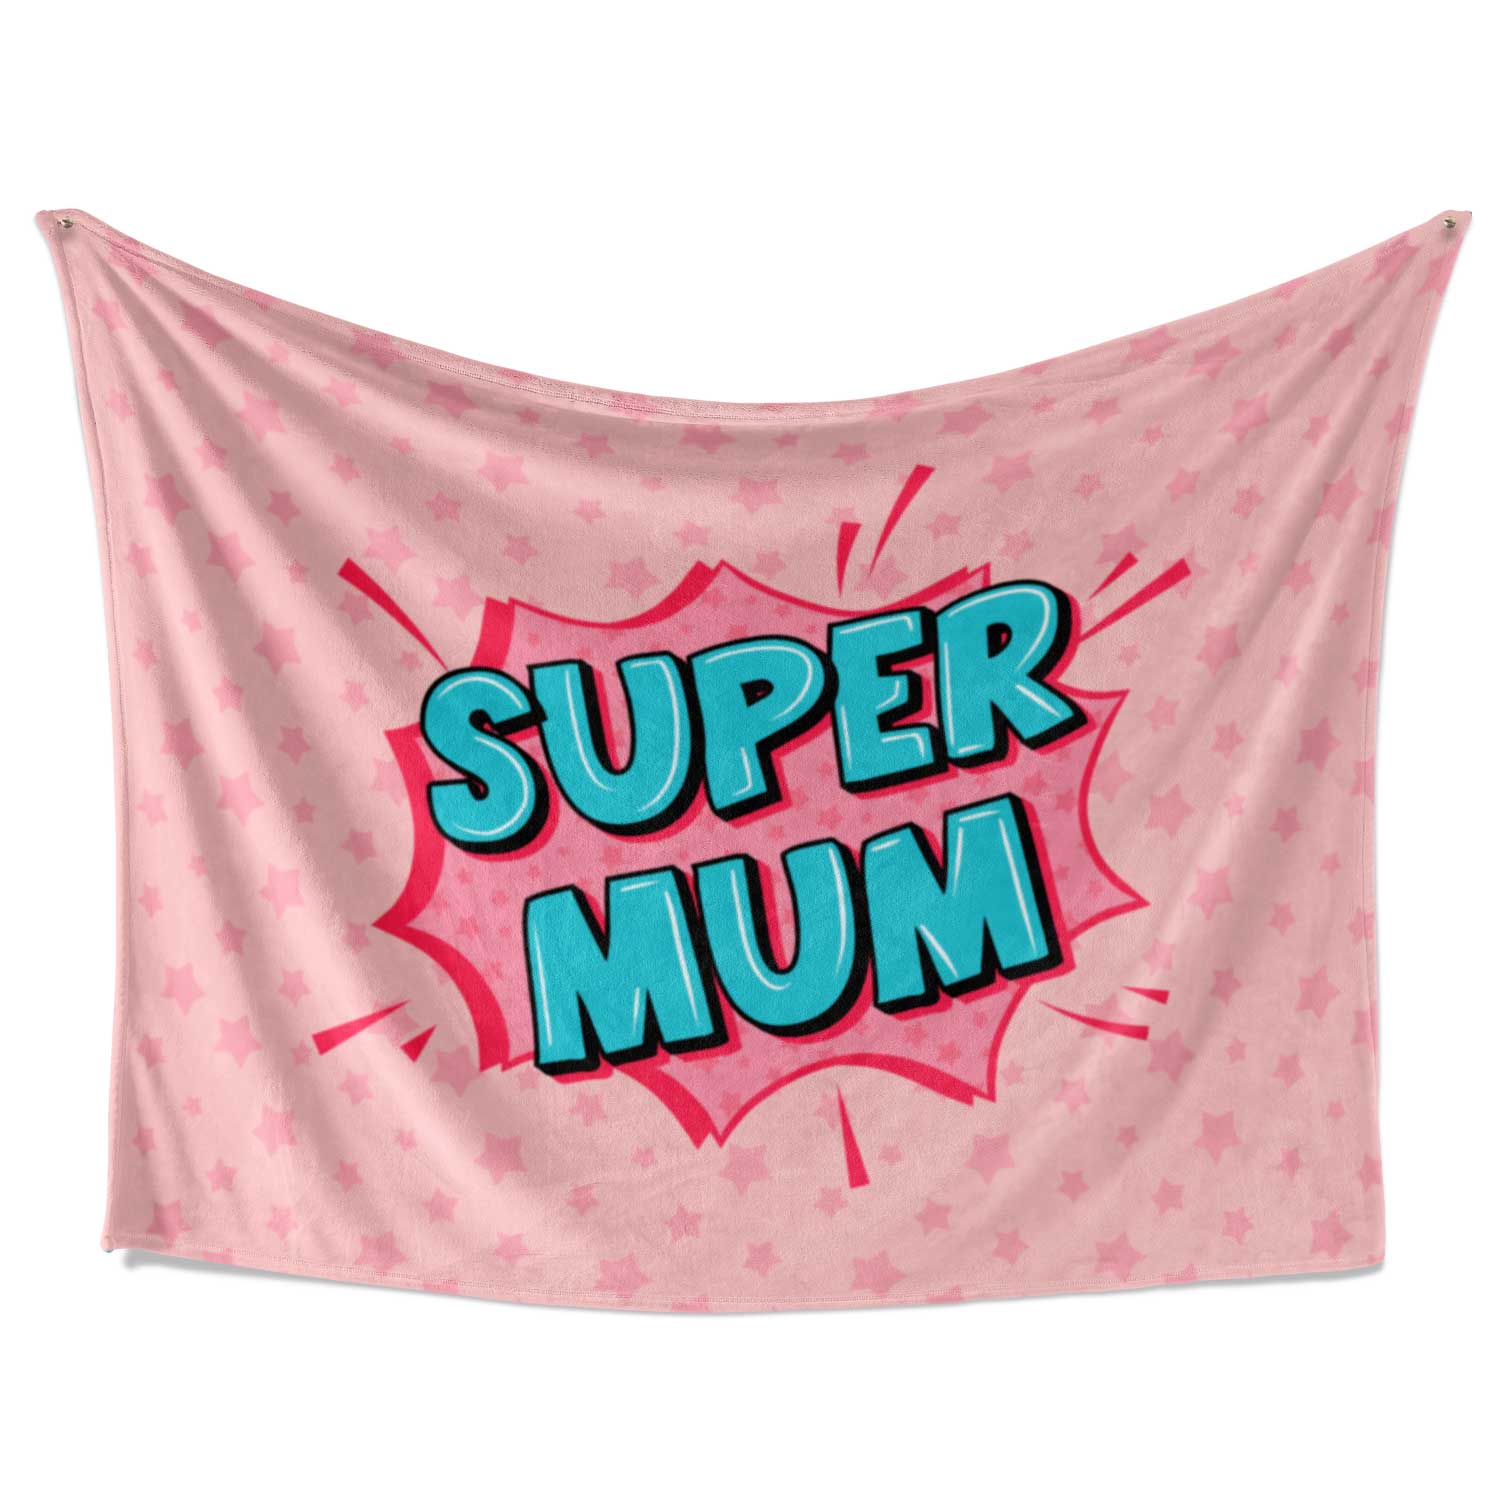 Super Mum Fleece Blanket